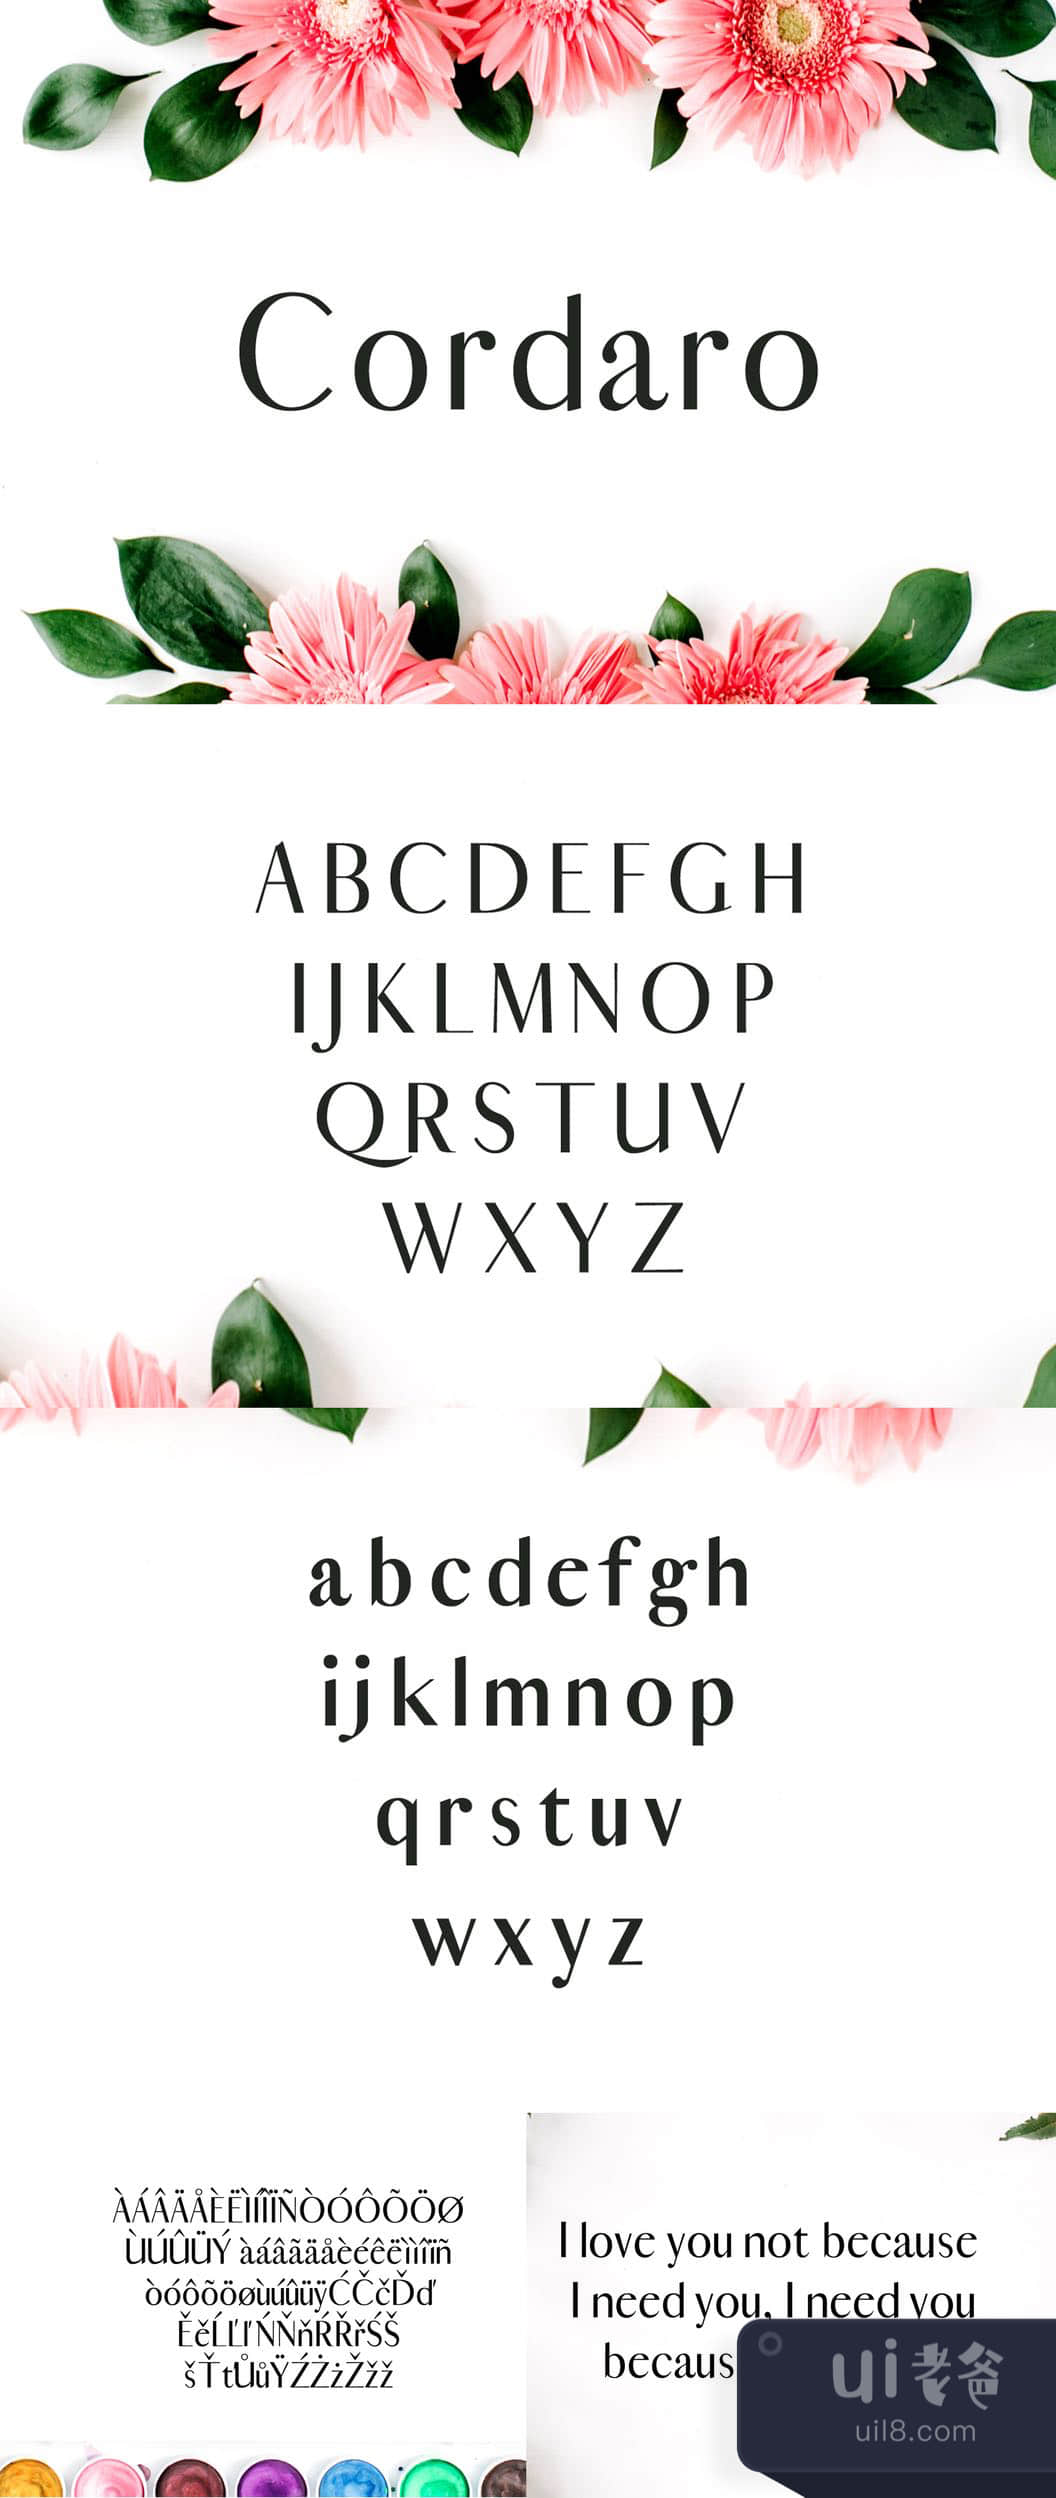 科达罗无衬线字体 (Cordaro Sans Serif Typeface)插图1